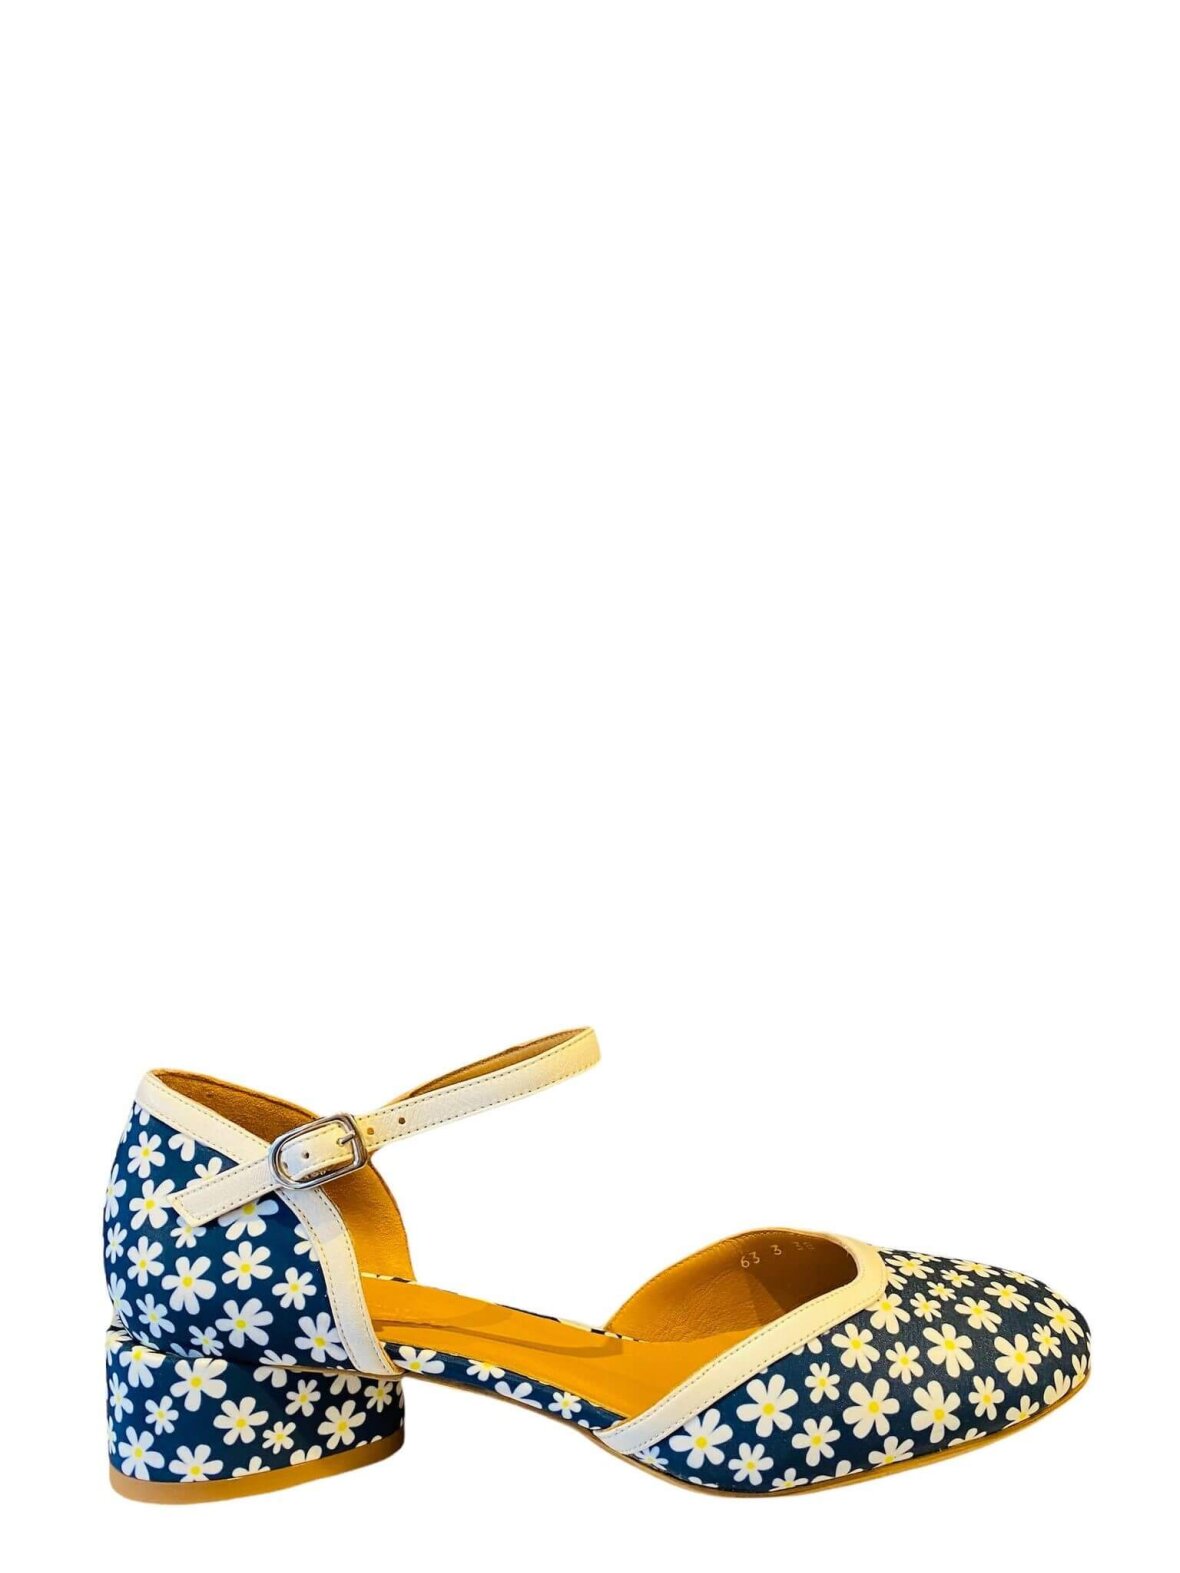 naturlig mangel kasseapparat Køb sko fra AUDLEY i blomster mønsteret tekstil med navy bund farve hos  Helle M